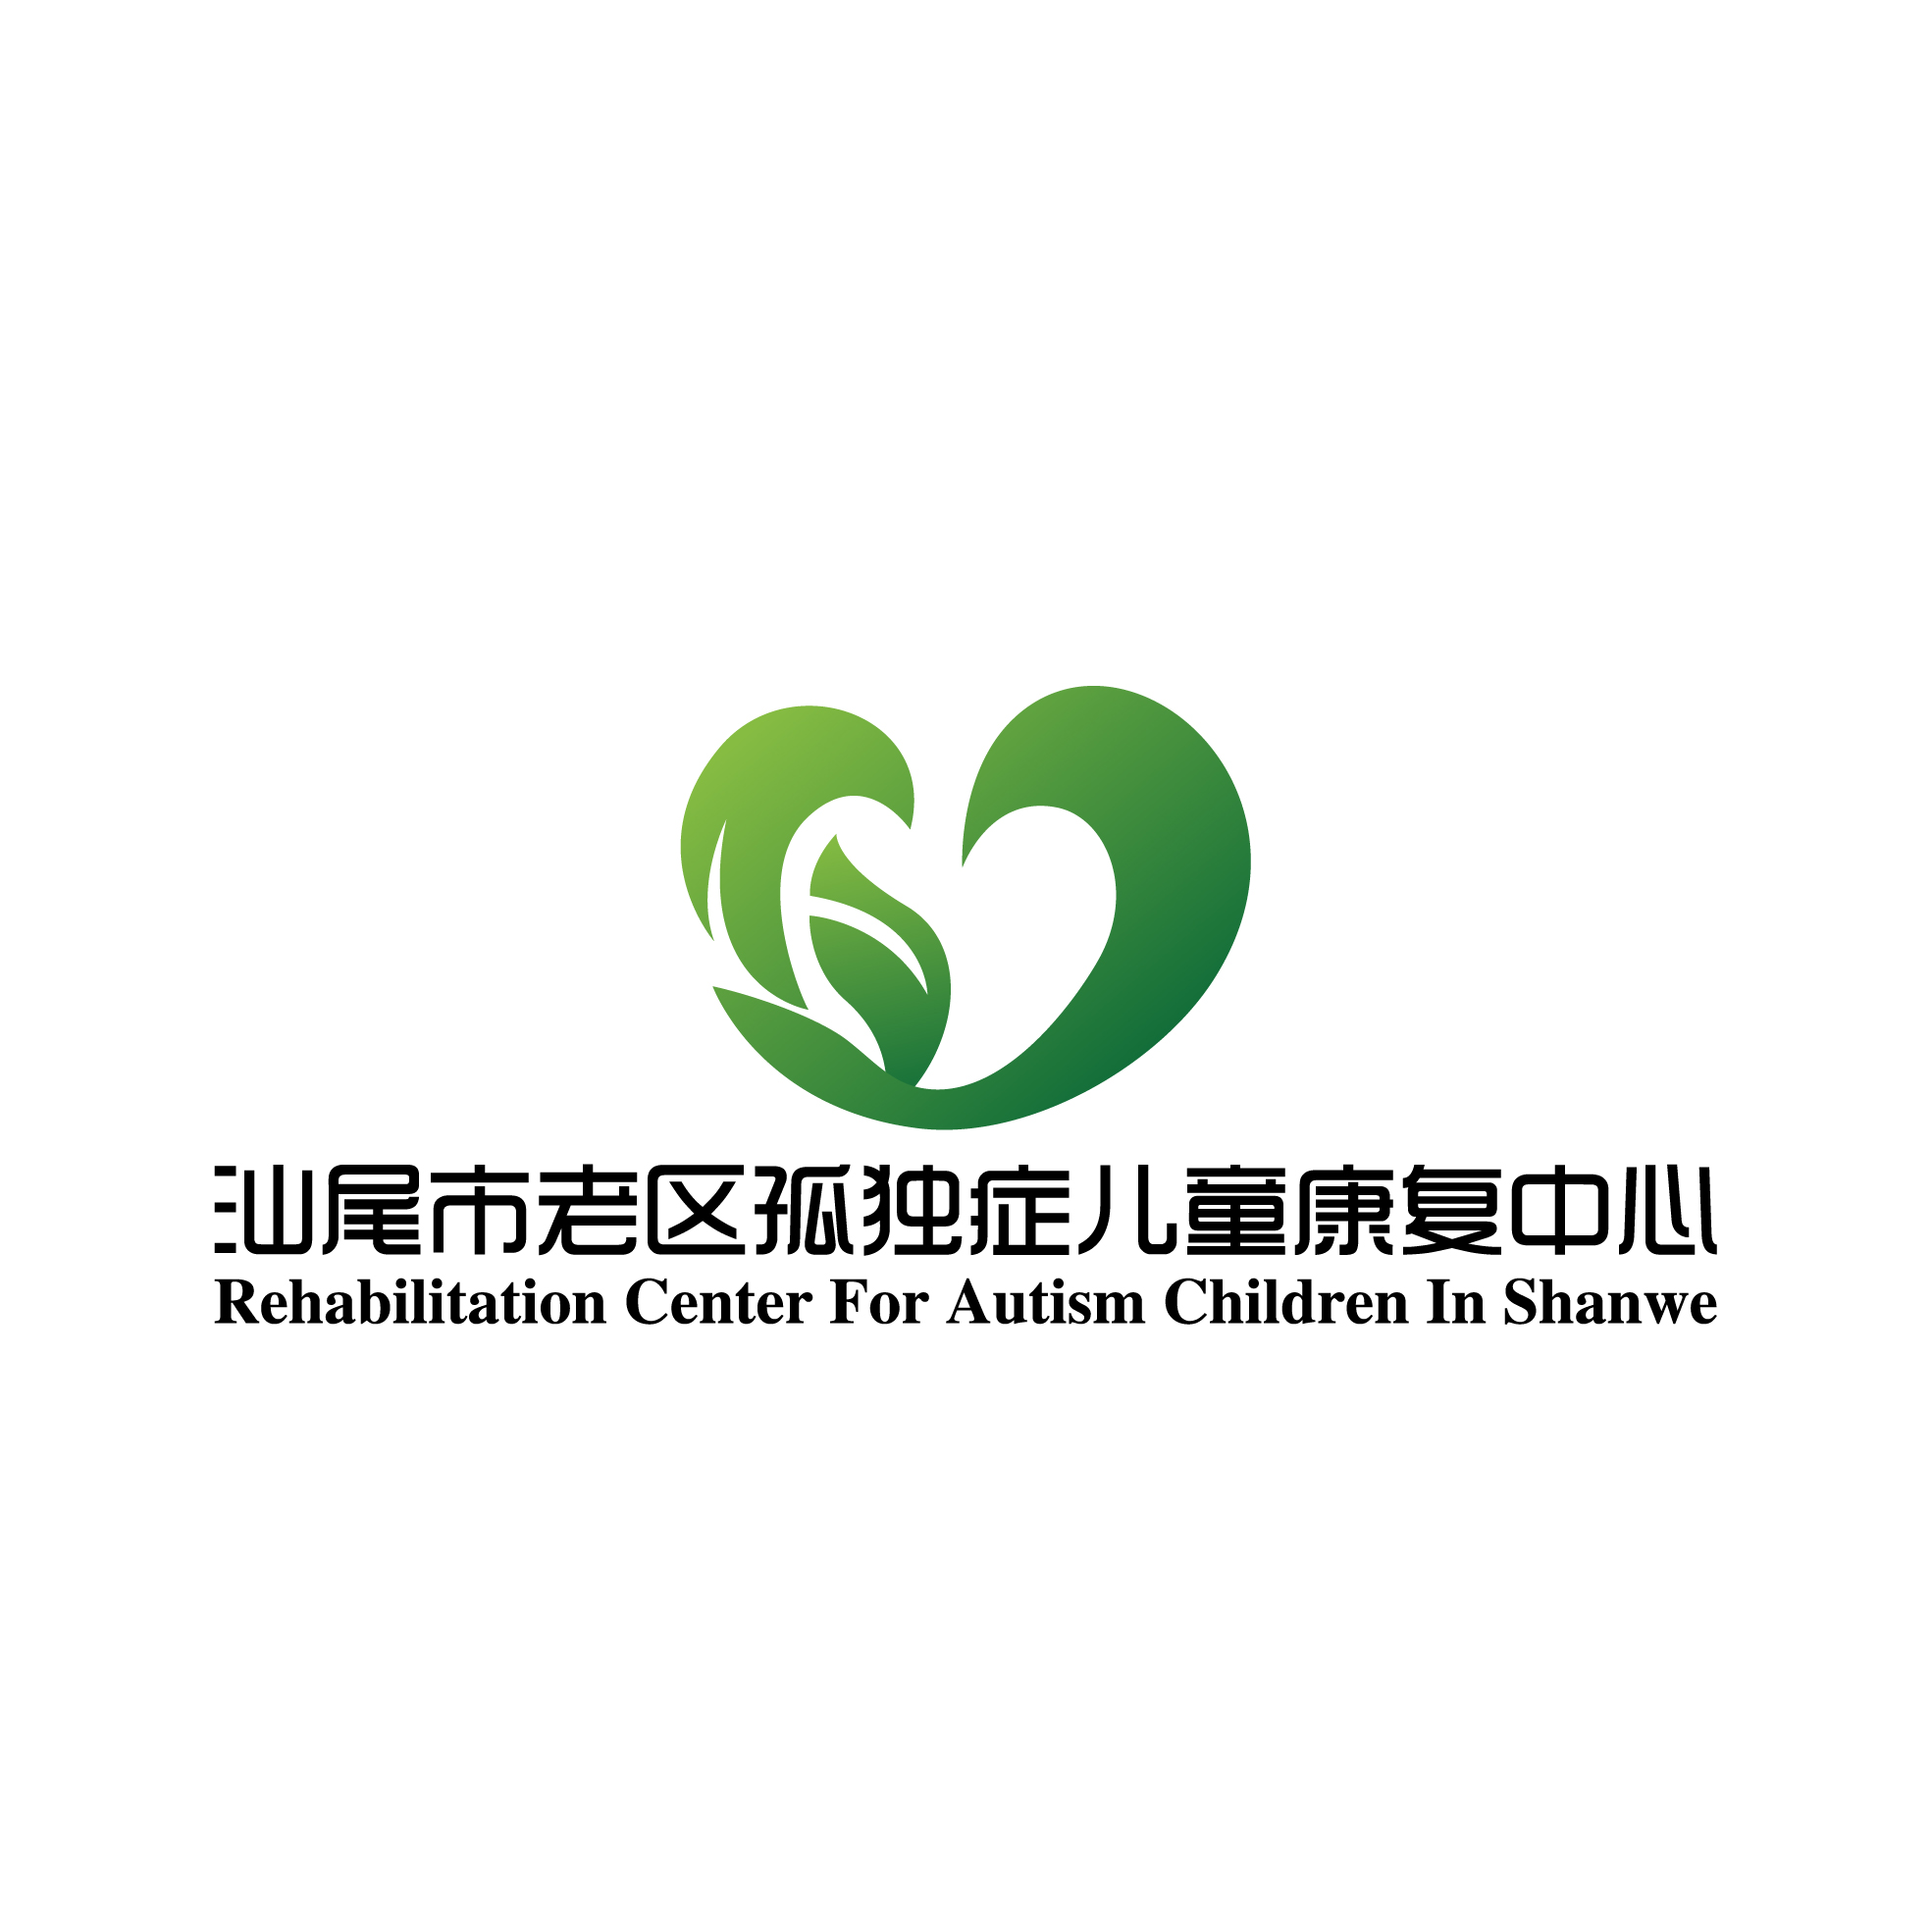 汕尾市老区孤独症儿童康复中心logo图片